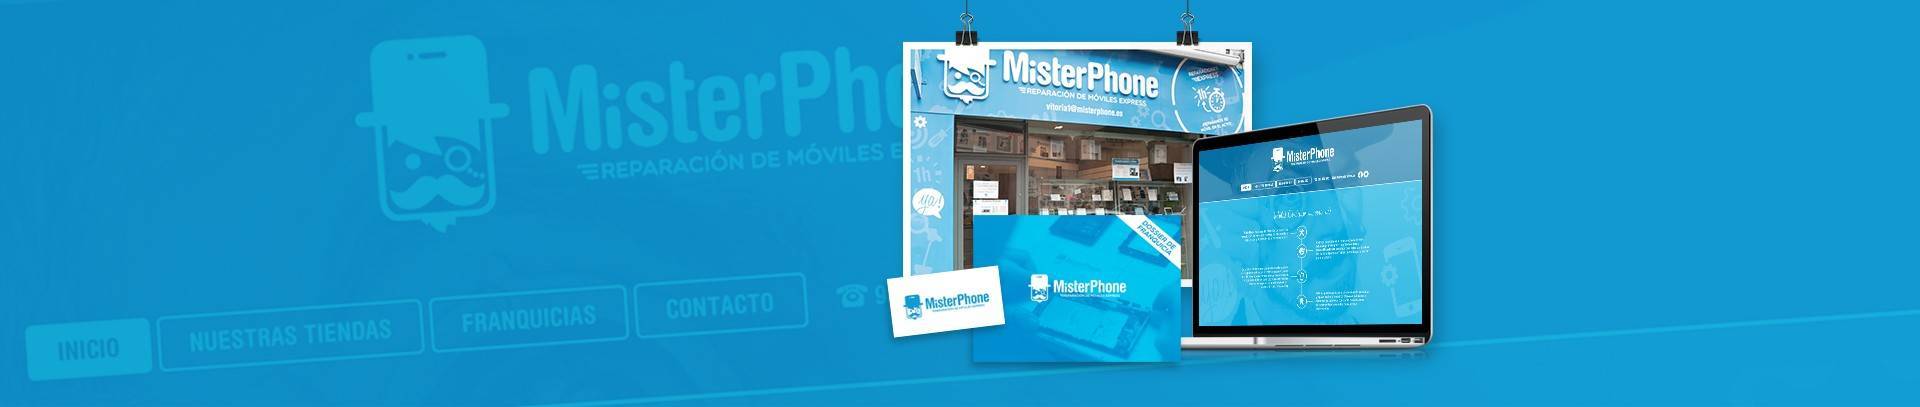 Misterphone, la franquicia líder en reparación de móviles